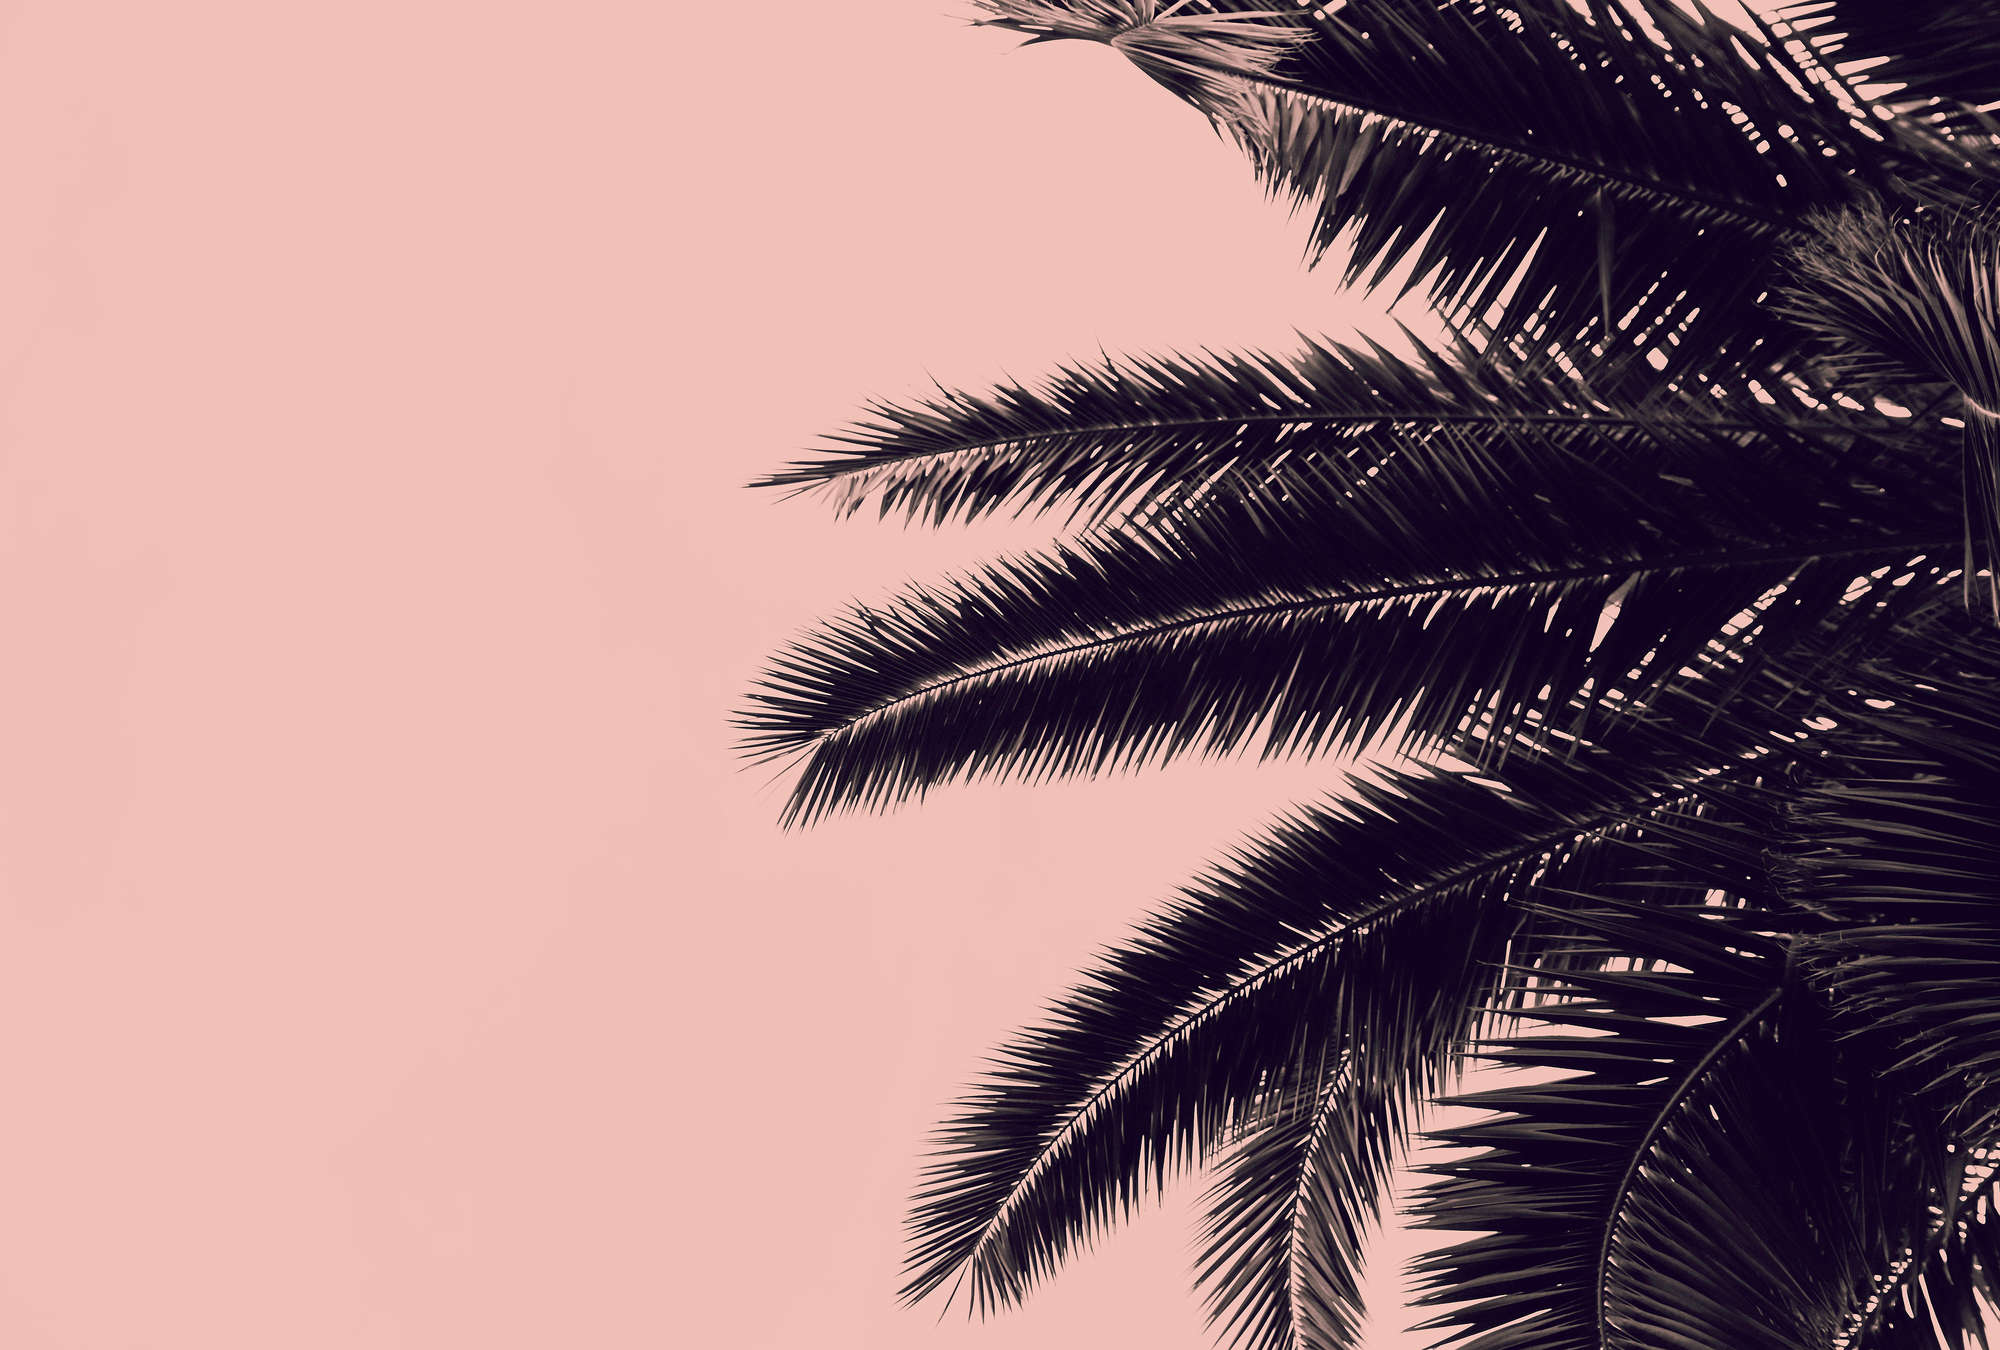             Papel pintado fotográfico rosa con hojas de palmera negras
        